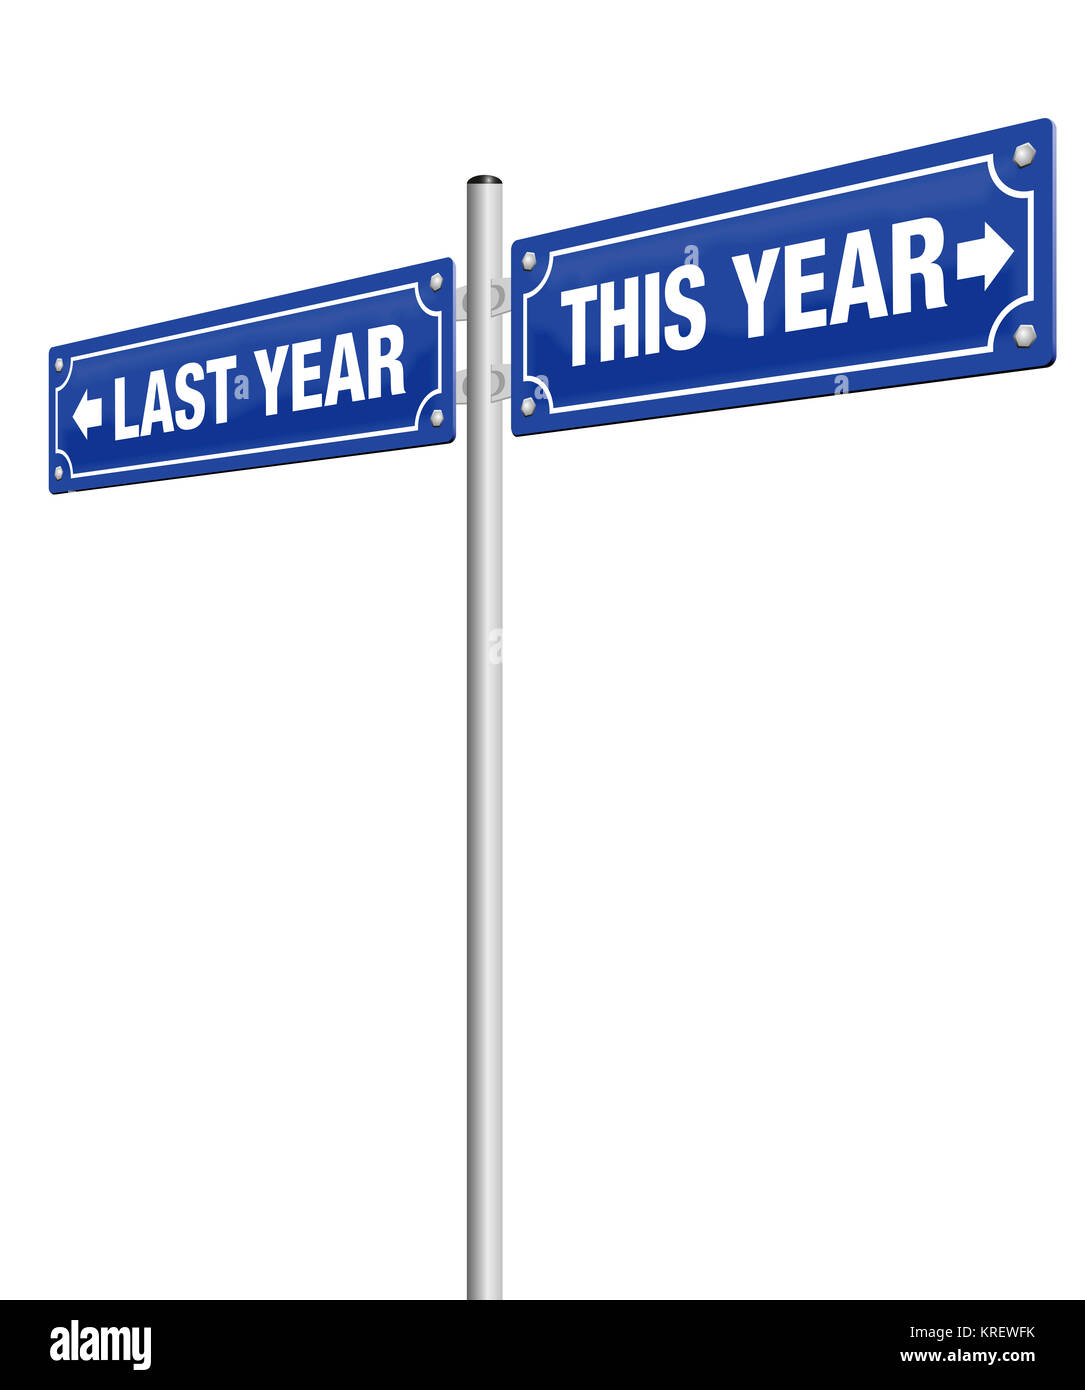 Letztes Jahr und dieses Jahr, auf zwei Straßenschilder in entgegengesetzte Richtung - symbolisch für Vergangenheit und Zukunft, für fertige und kommenden, für gute Vorsätze geschrieben Stockfoto